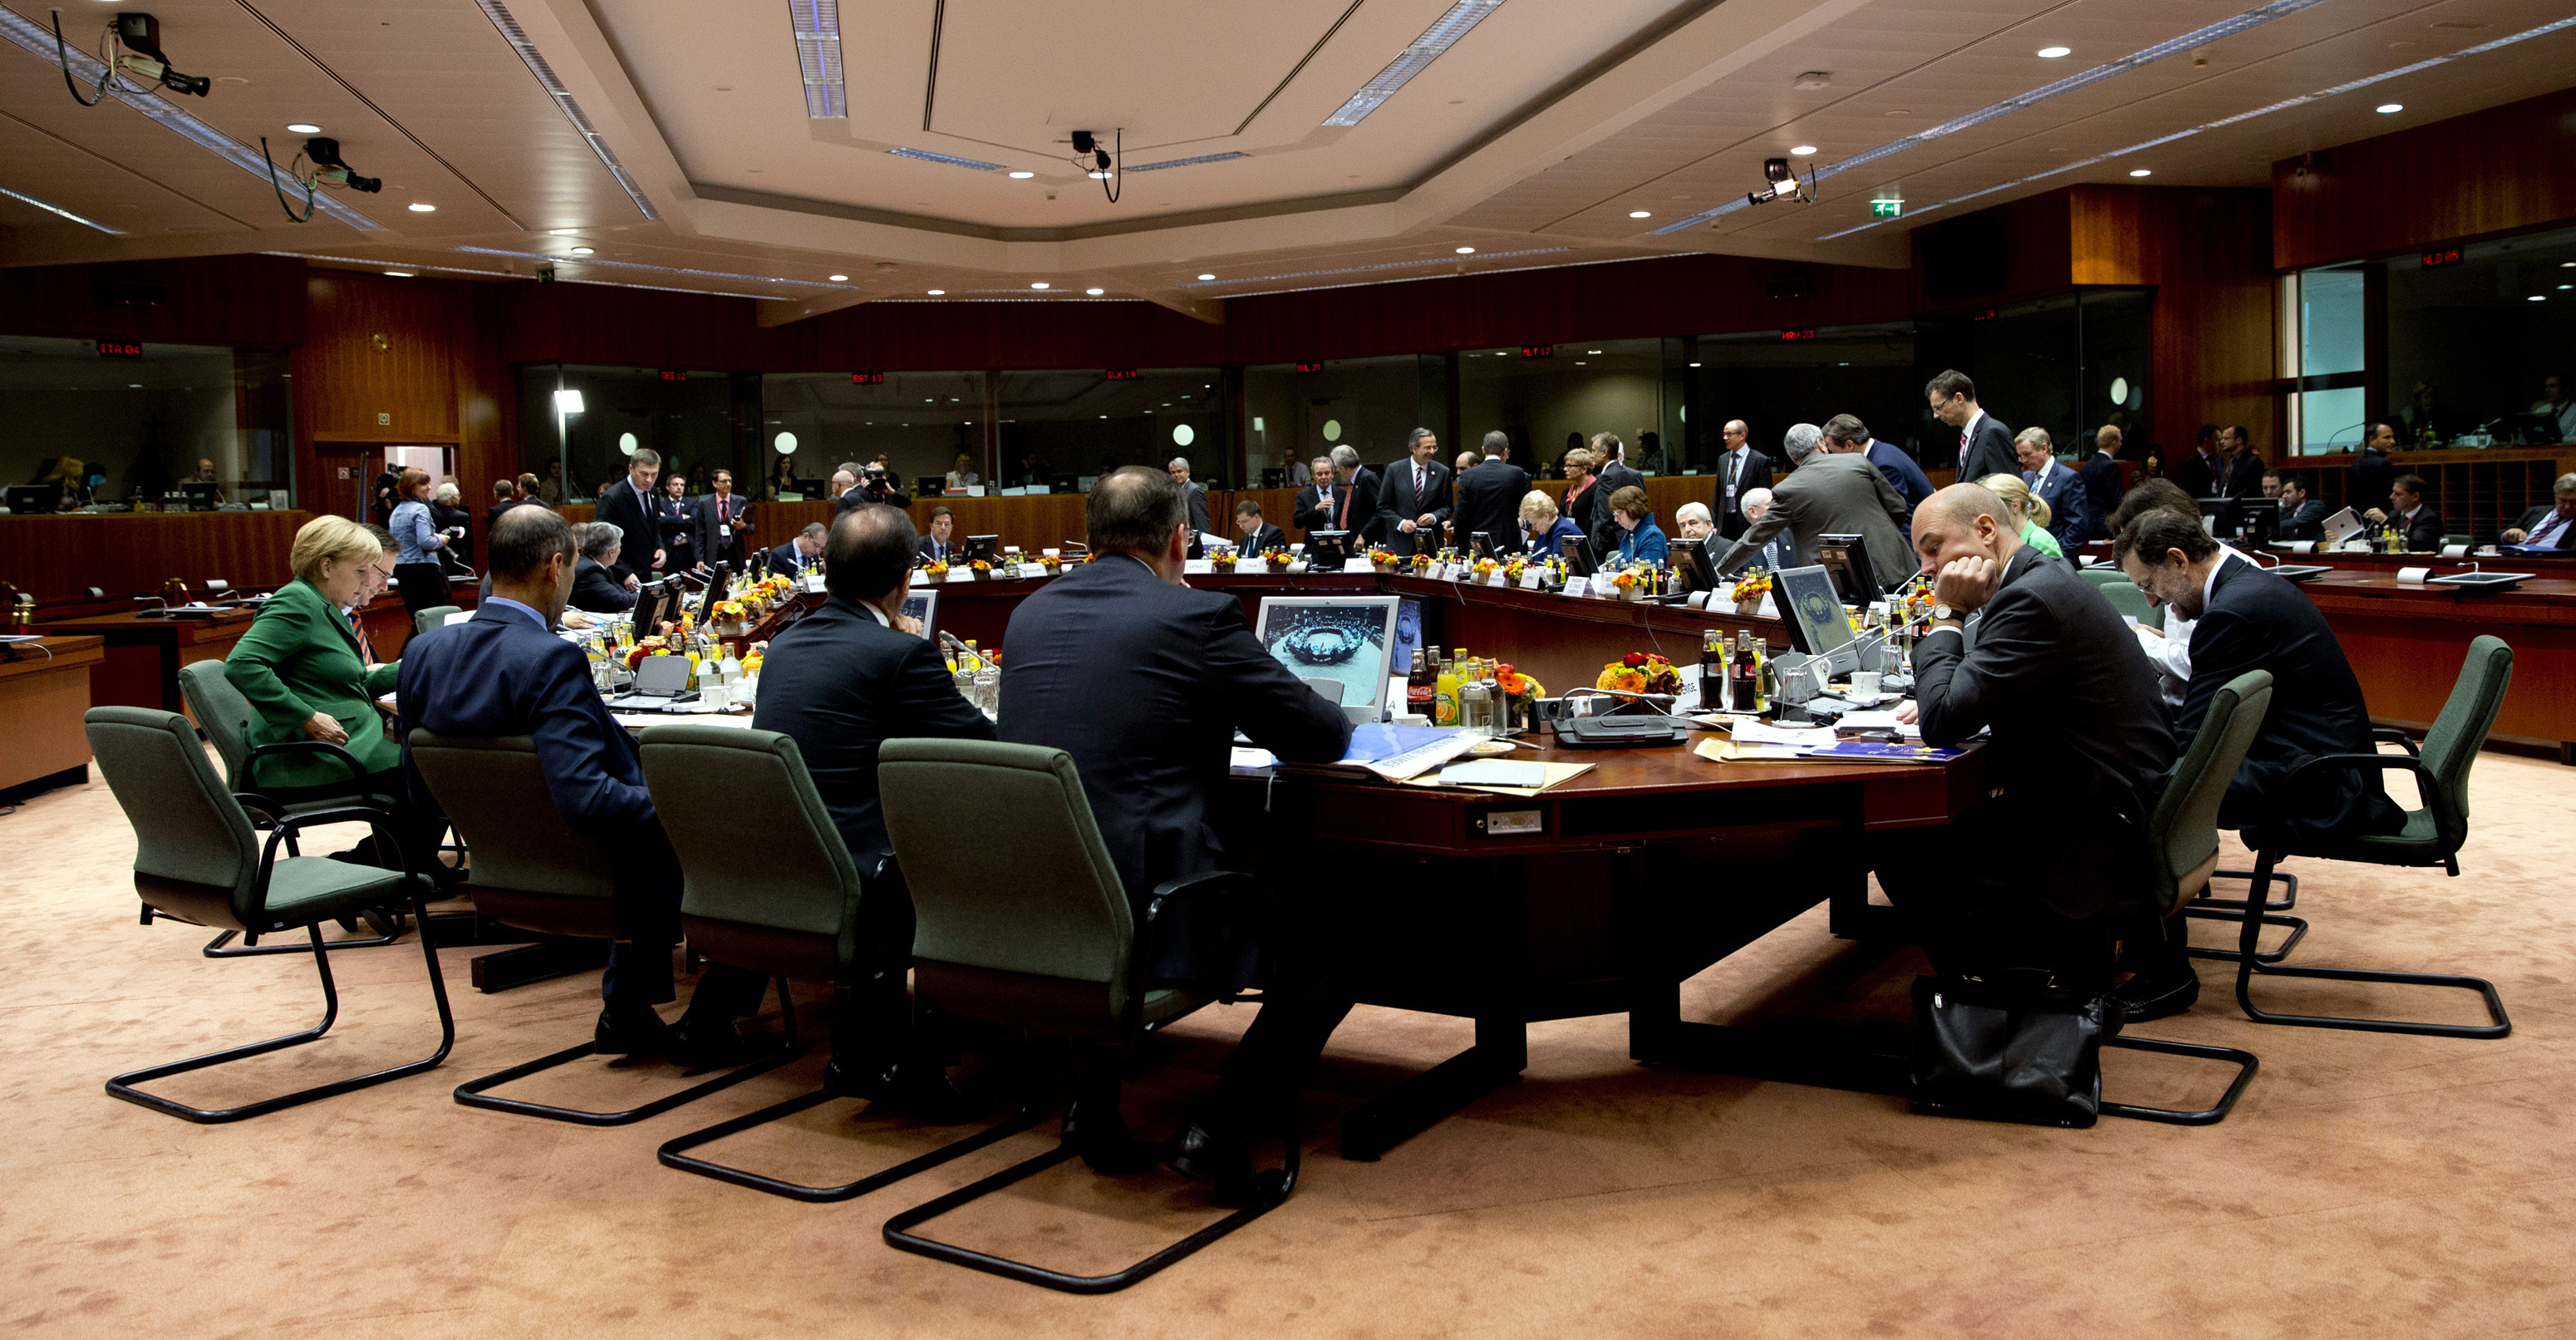 Σύνοδος Κορυφής ΕΕ: Ο Πρωθυπουργός θα ζητήσει την Πέμπτη να υπάρξει λύση στο Eurogroup